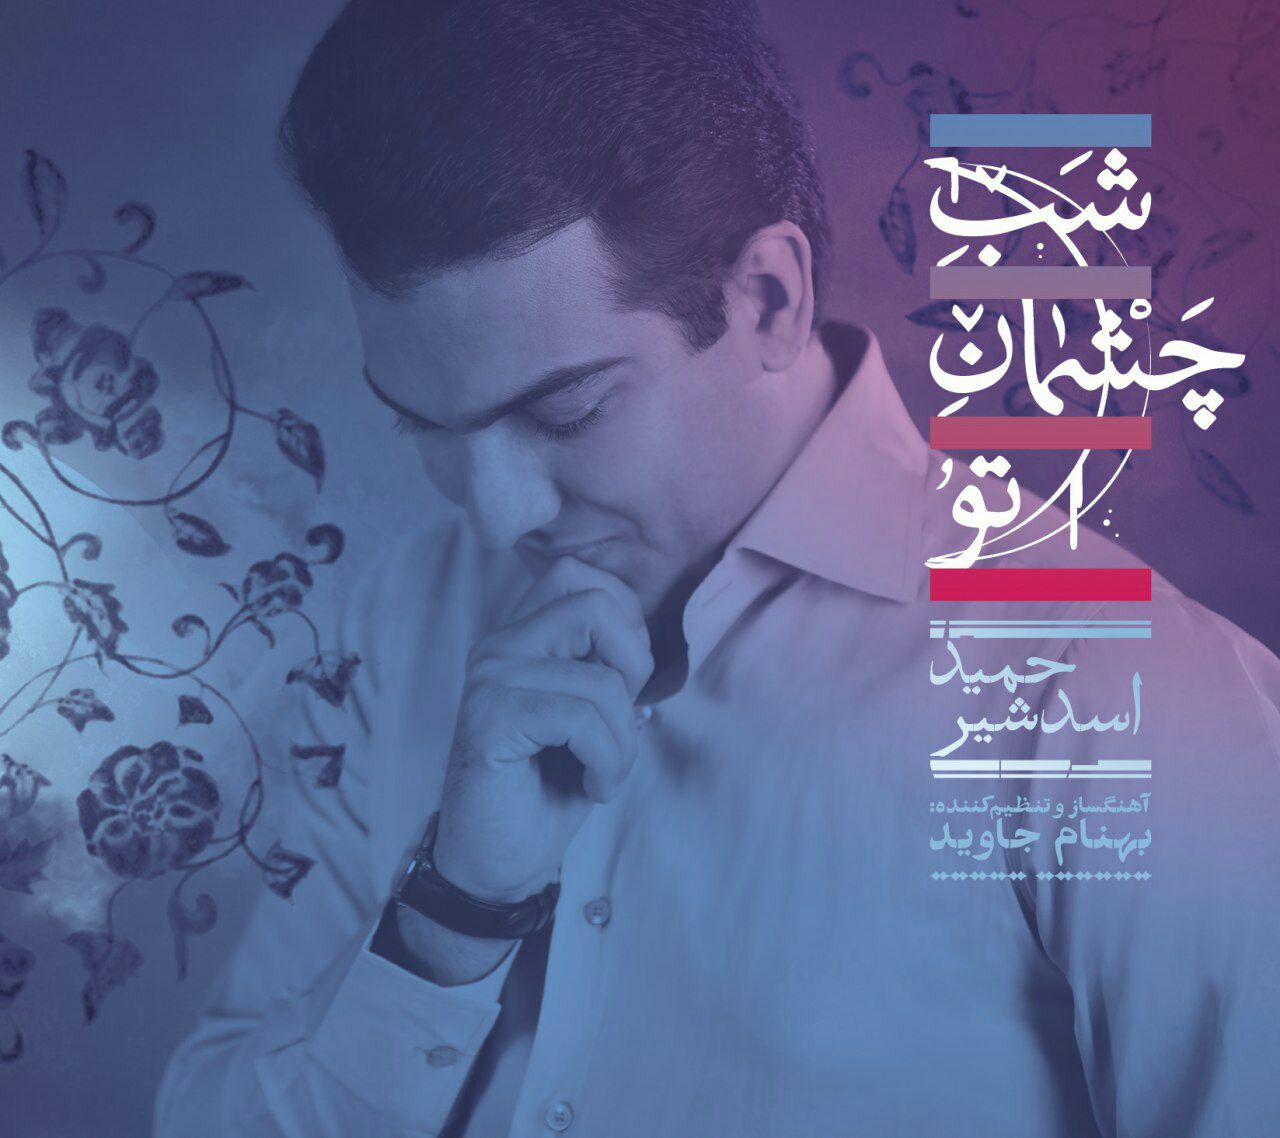 آلبوم «شب چشمان تو» با آواز حمید اسدشیر و آهنگسازی بهنام جاوید منتشر می شود